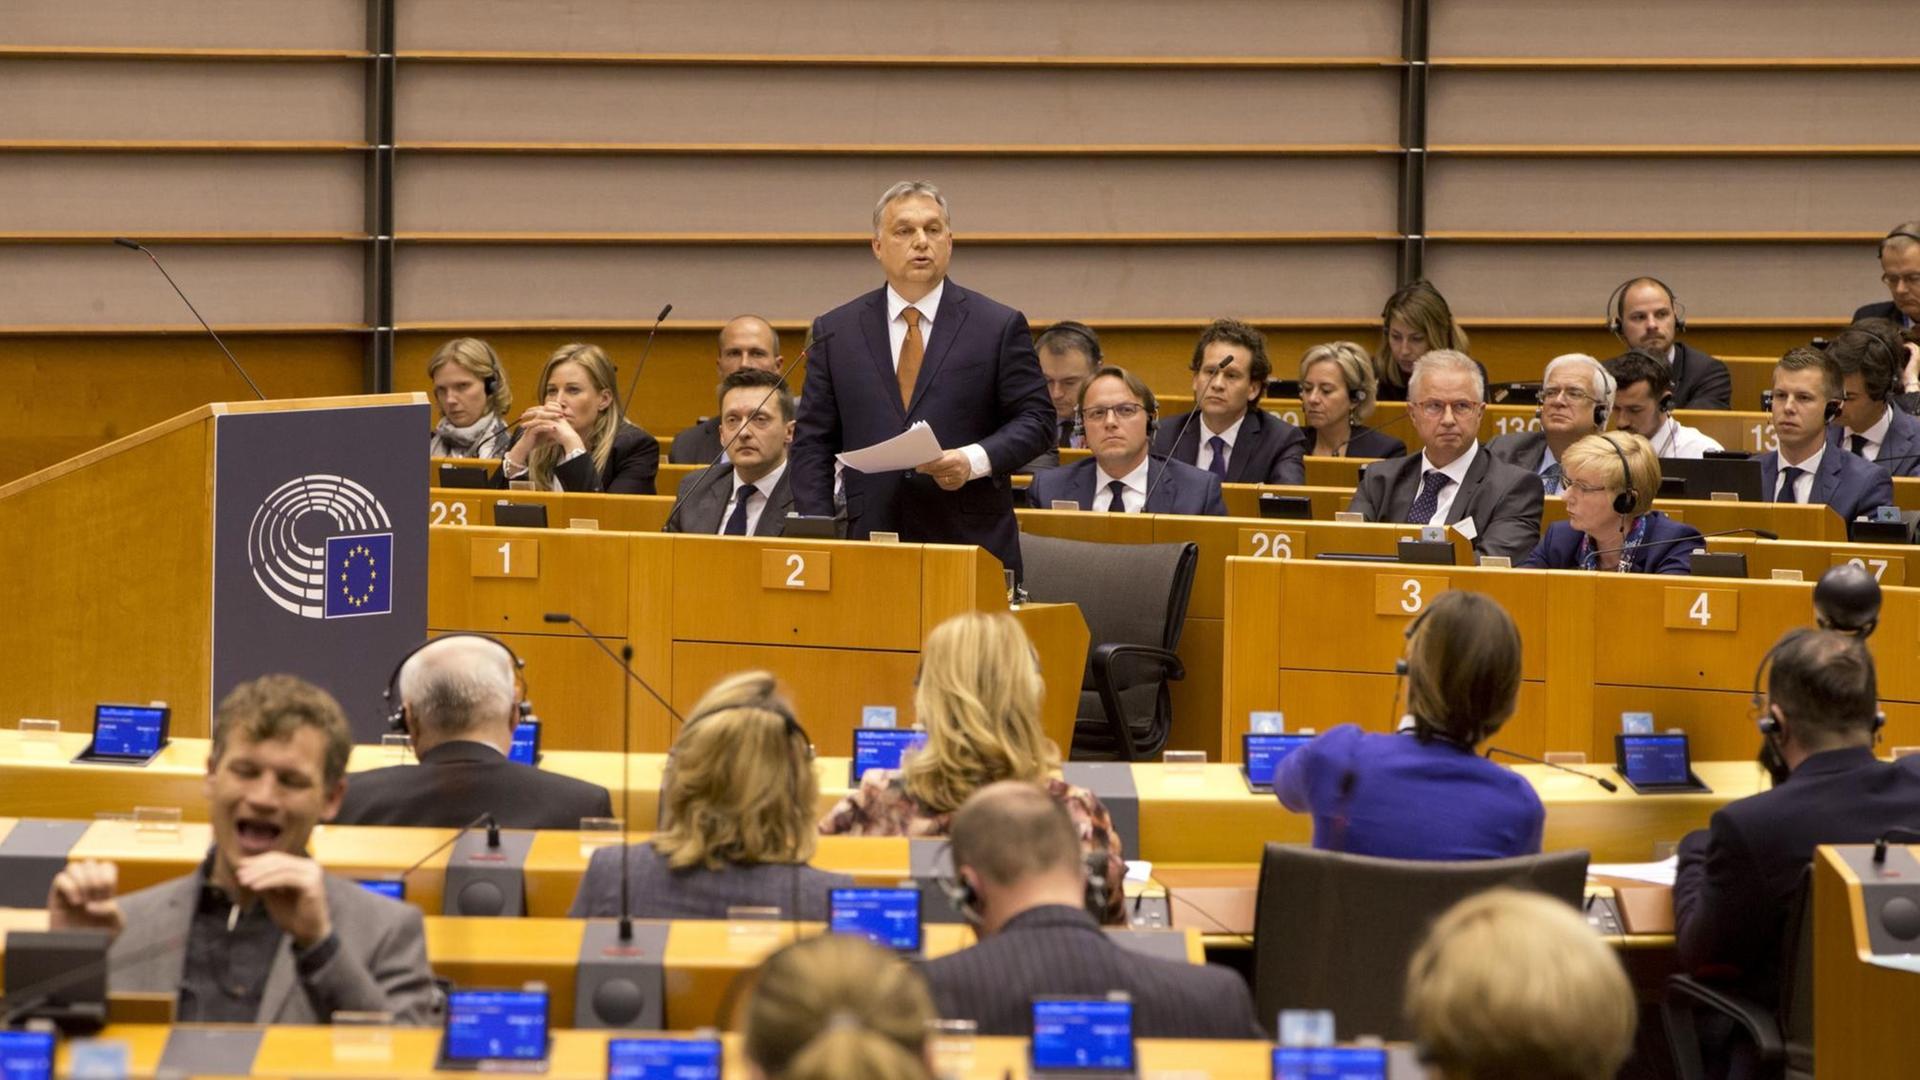 Ungarns Ministerpräsident Viktor Orban spricht vor dem EU-Parlament in Brüssel. Die EU-Kommission hat den ersten Schritt eines Vertragsverletzungsverfahrens wegen des umstrittenen neuen Hochschulgesetzes gegen Ungarn eingeleitet.